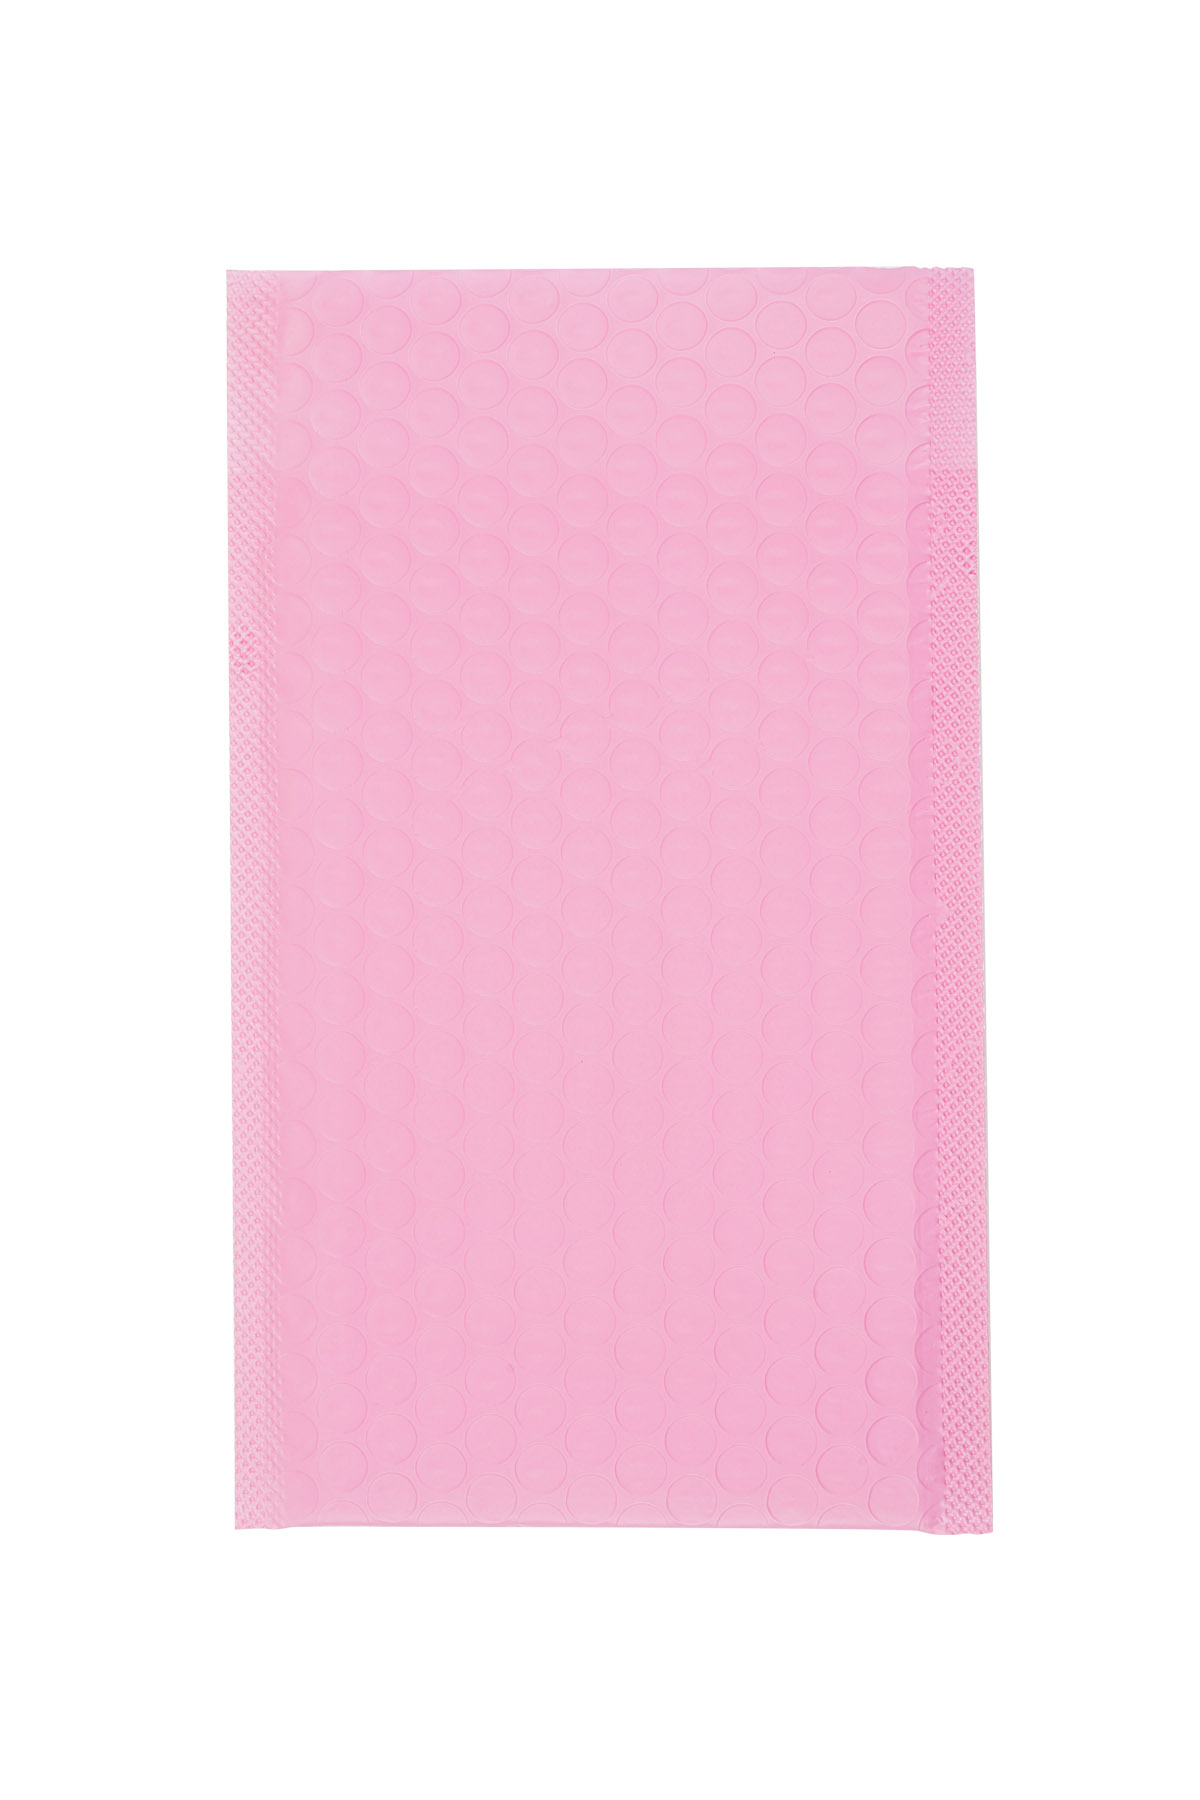 Luftpolstertasche für Versandtaschen – rosa Kunststoff